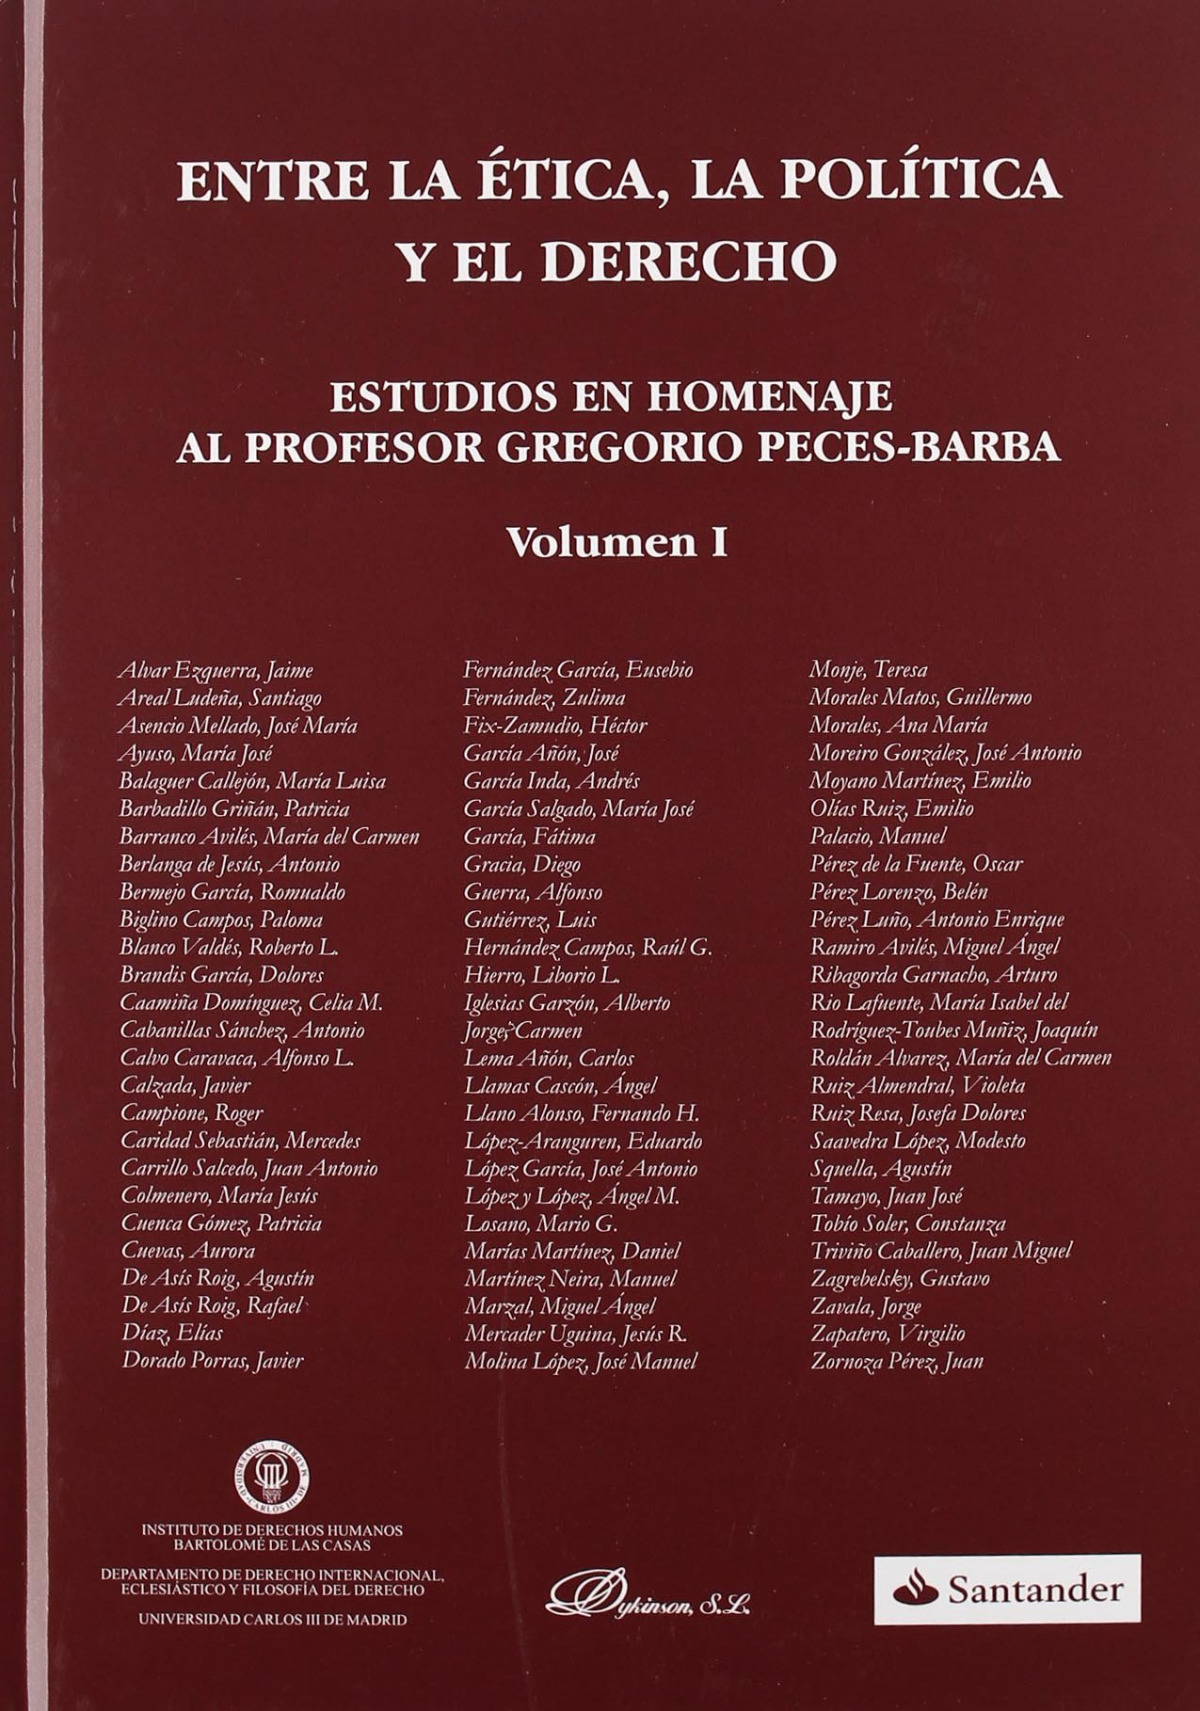 Estudios en Homenaje al Profesor Gregorio Peces-Barba (Vol. I). - Fernández García, Eusebio et al.